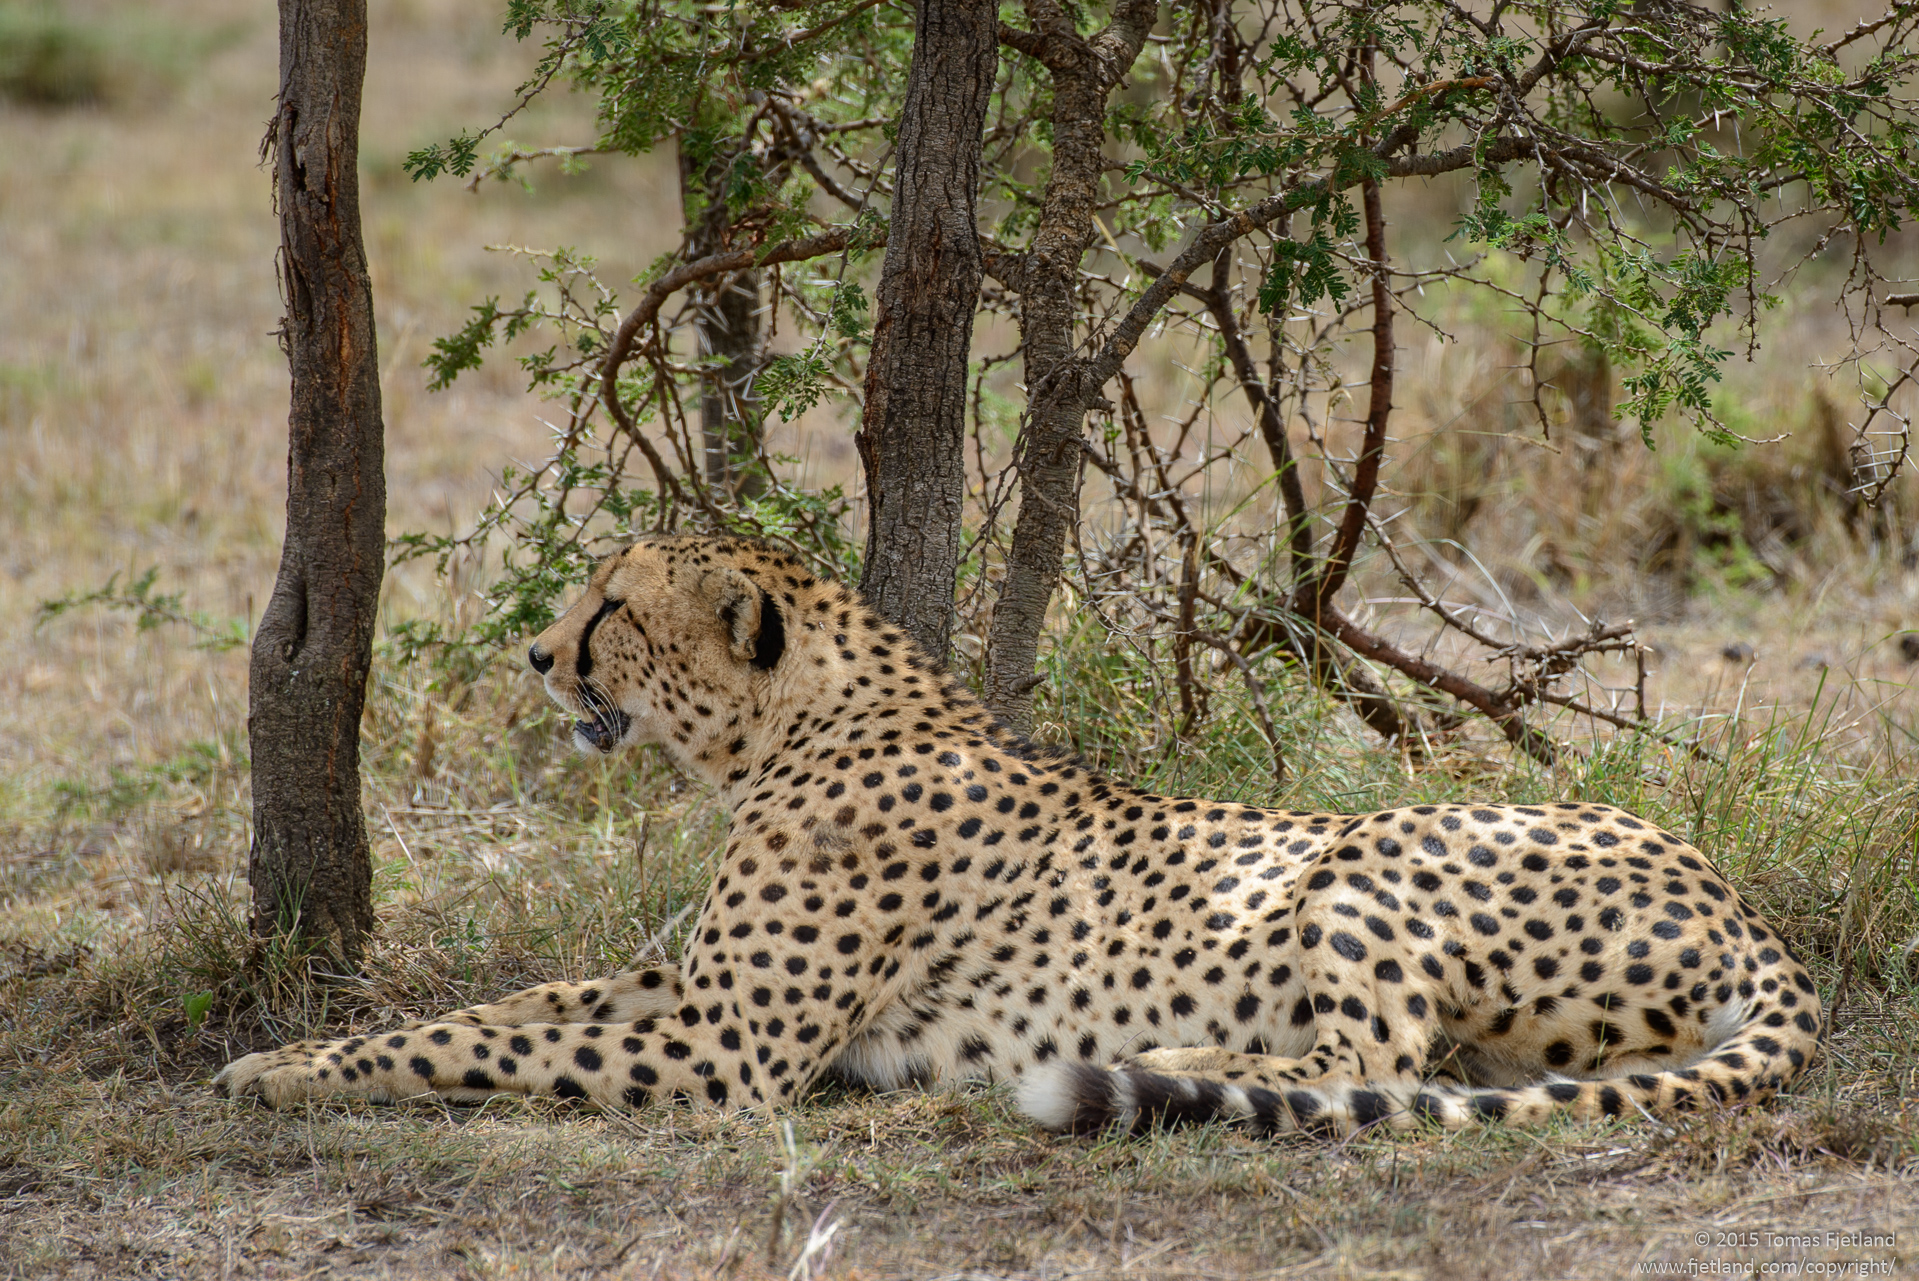 Cheetah enjoying the shade of a bush at high noon